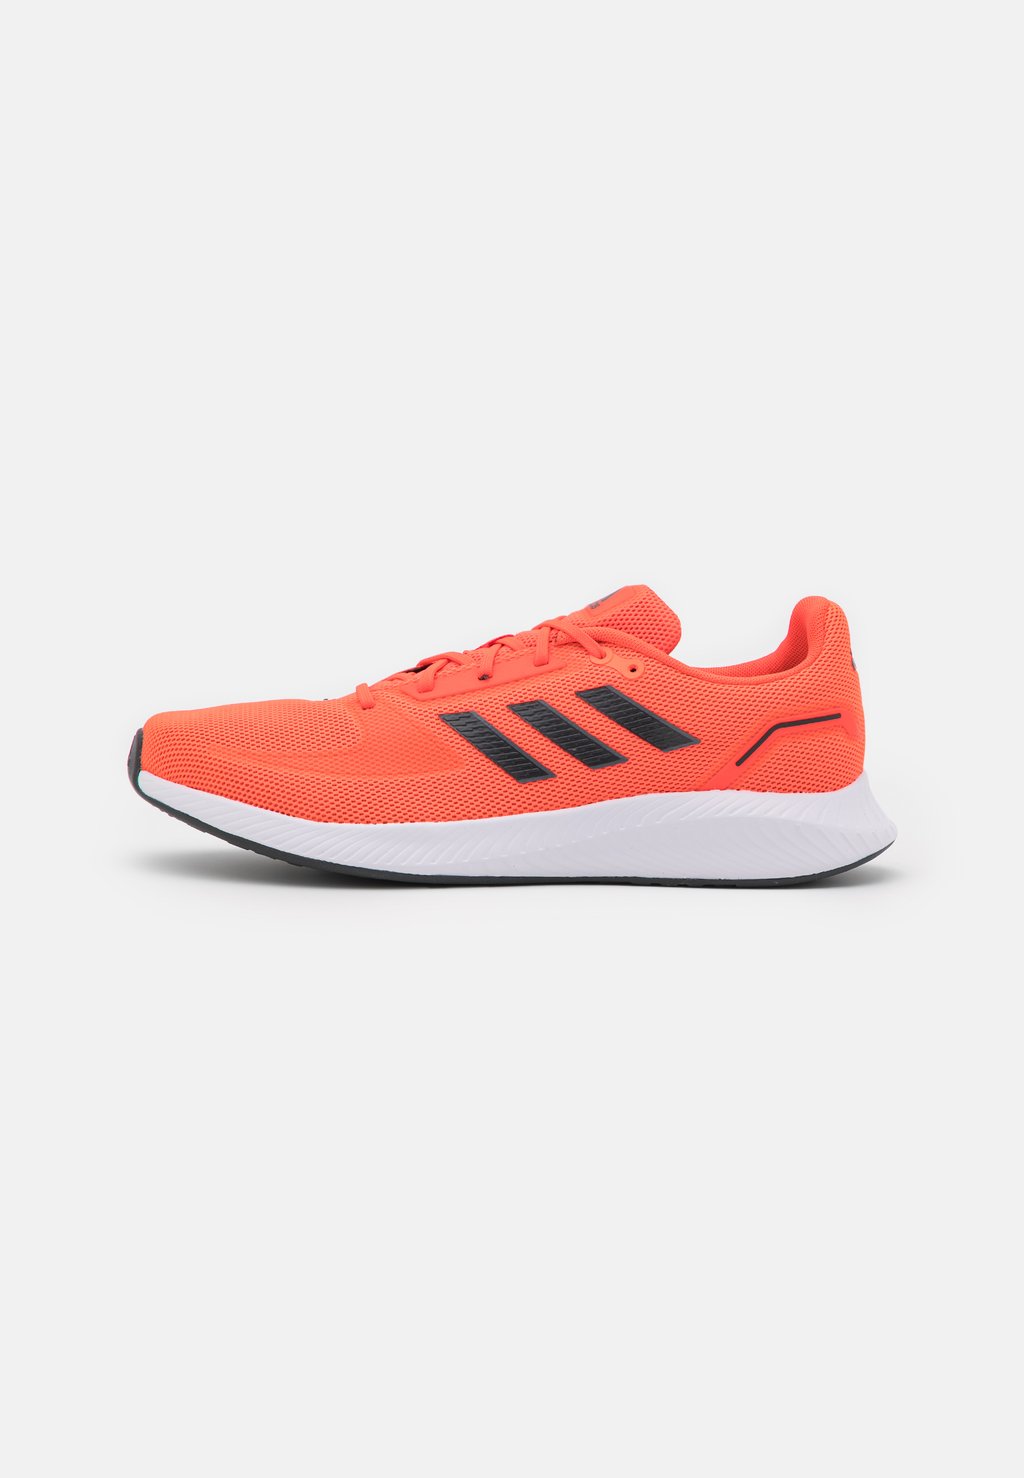 Нейтральные кроссовки Runfalcon 2.0 Adidas, цвет solar red/carbon/grey